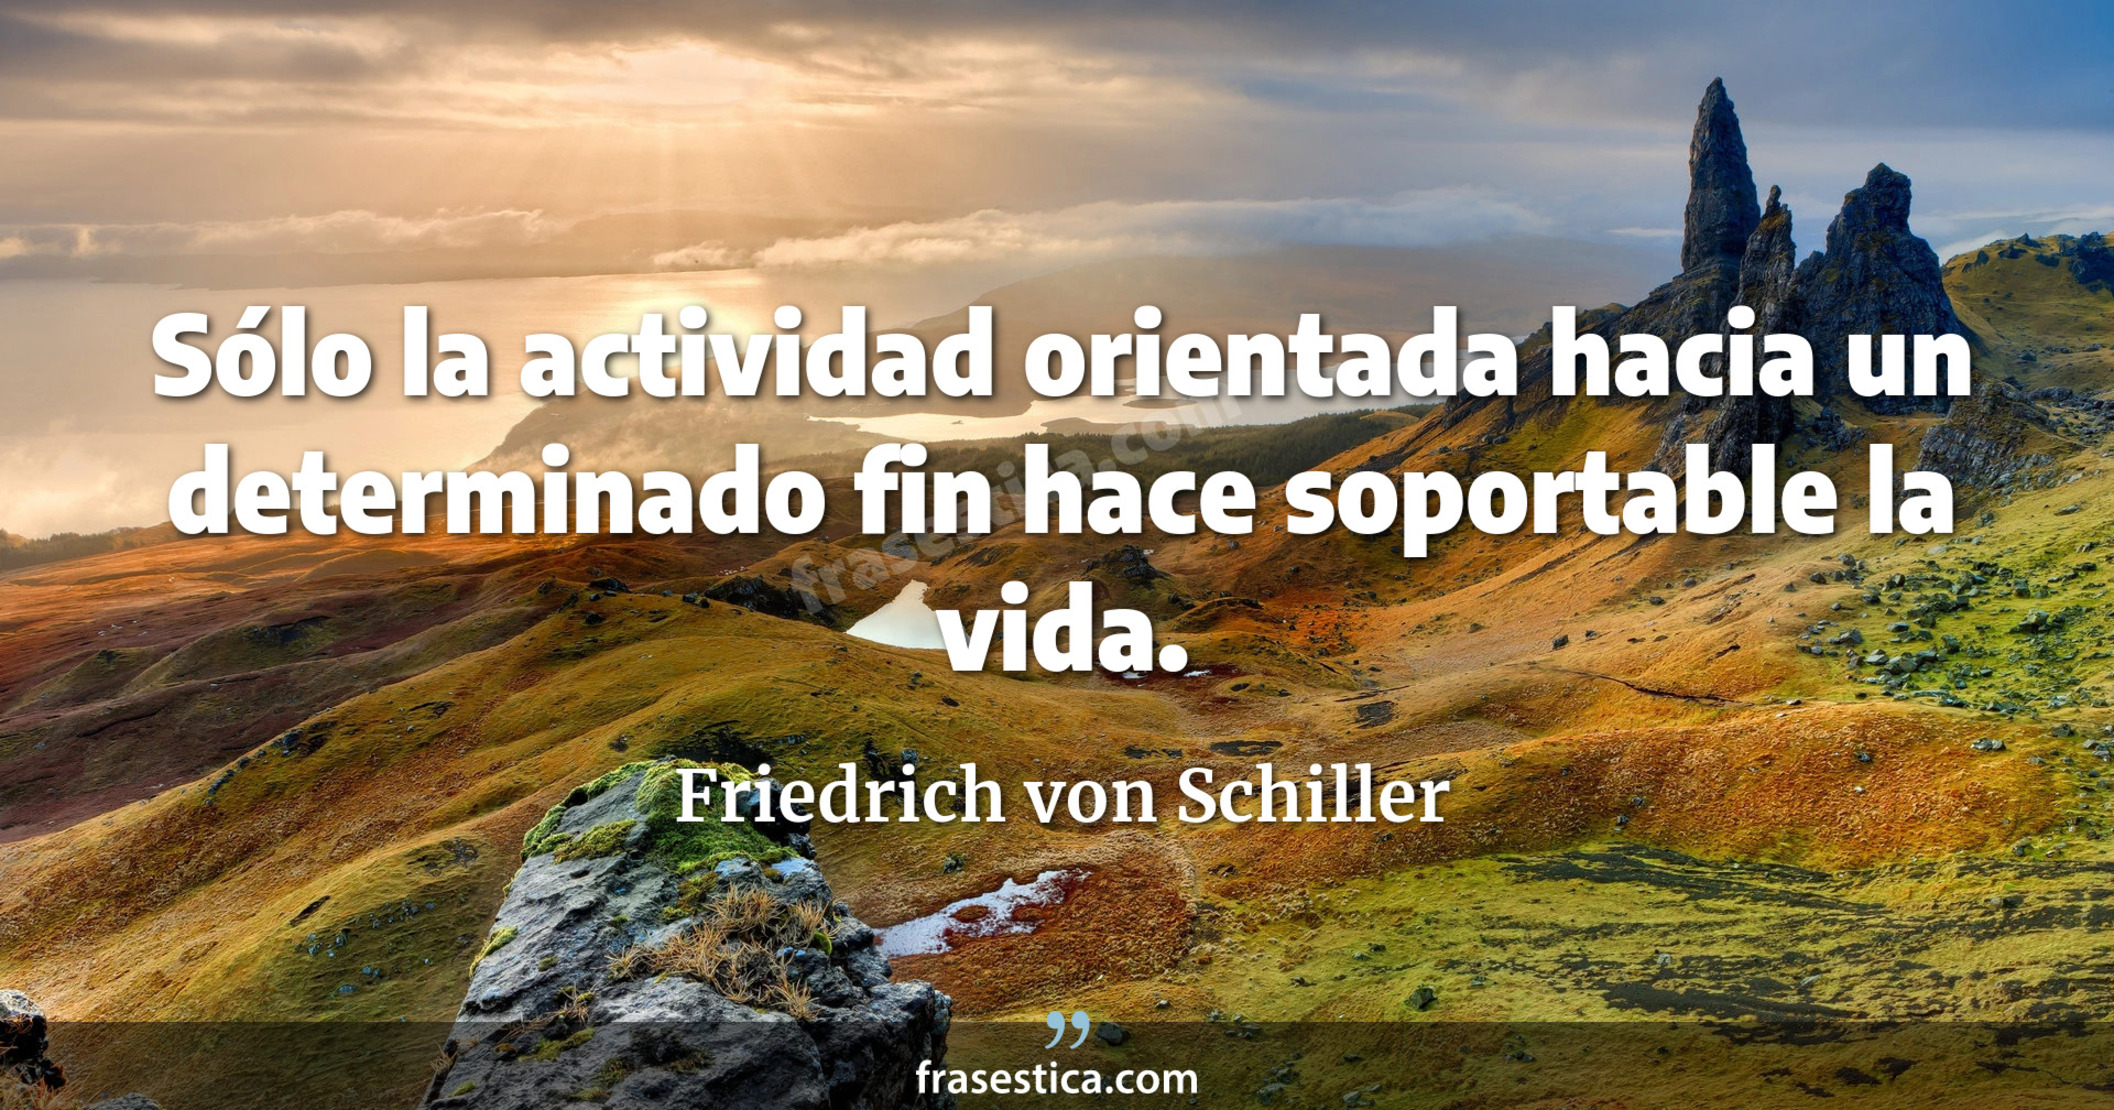 Sólo la actividad orientada hacia un determinado fin hace soportable la vida. - Friedrich von Schiller